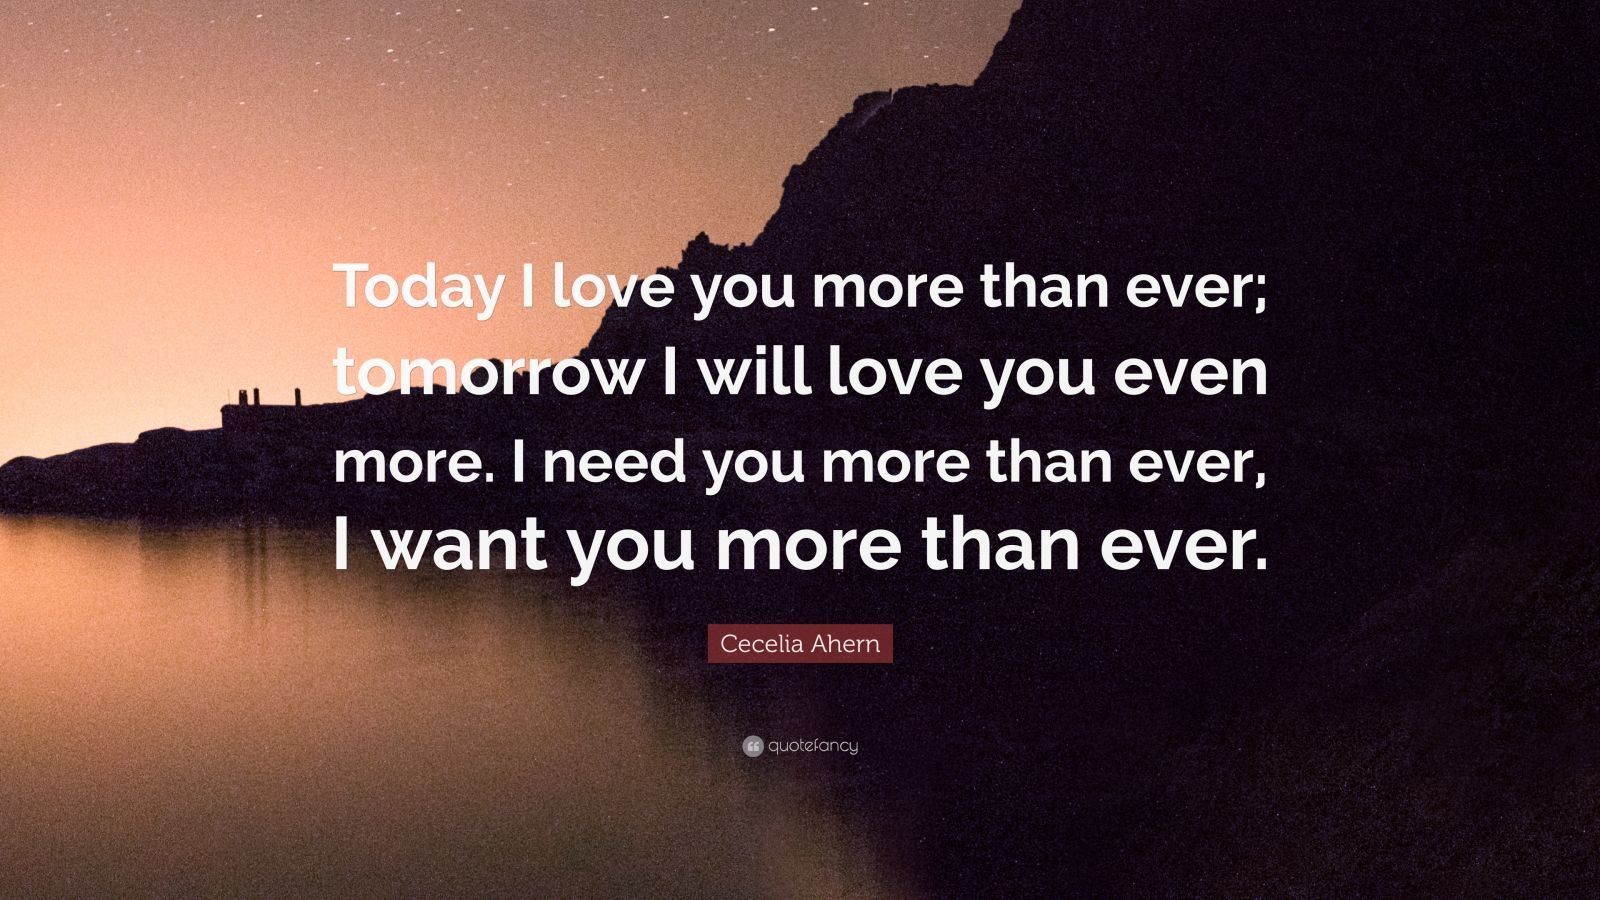 i need you more